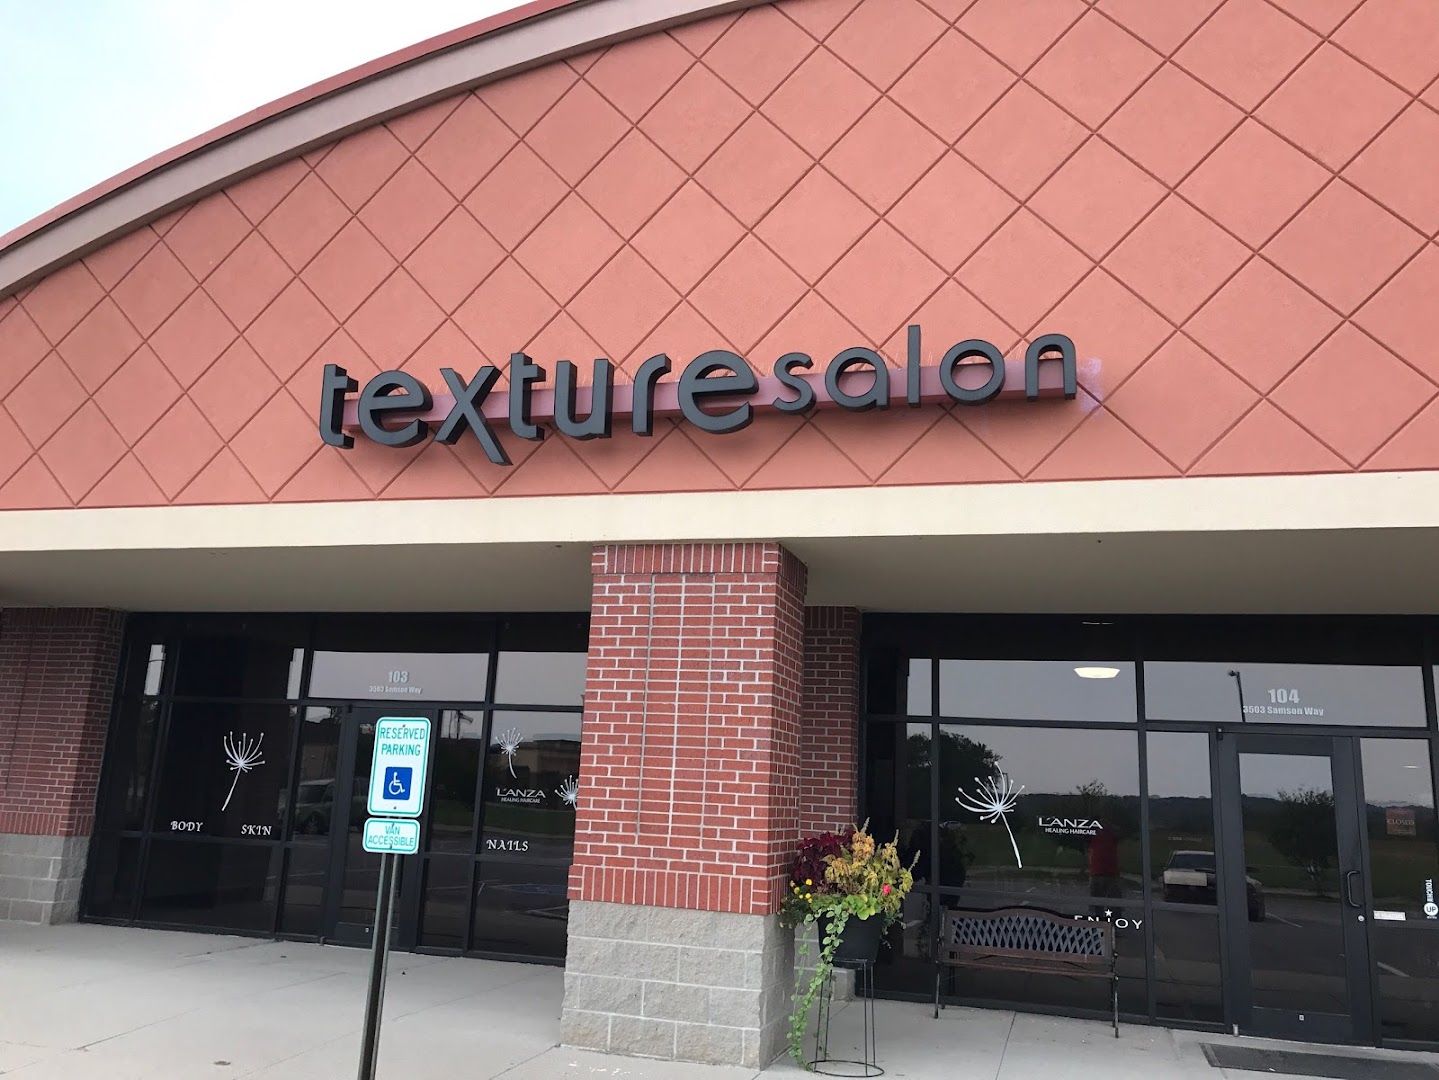 Texture Salon